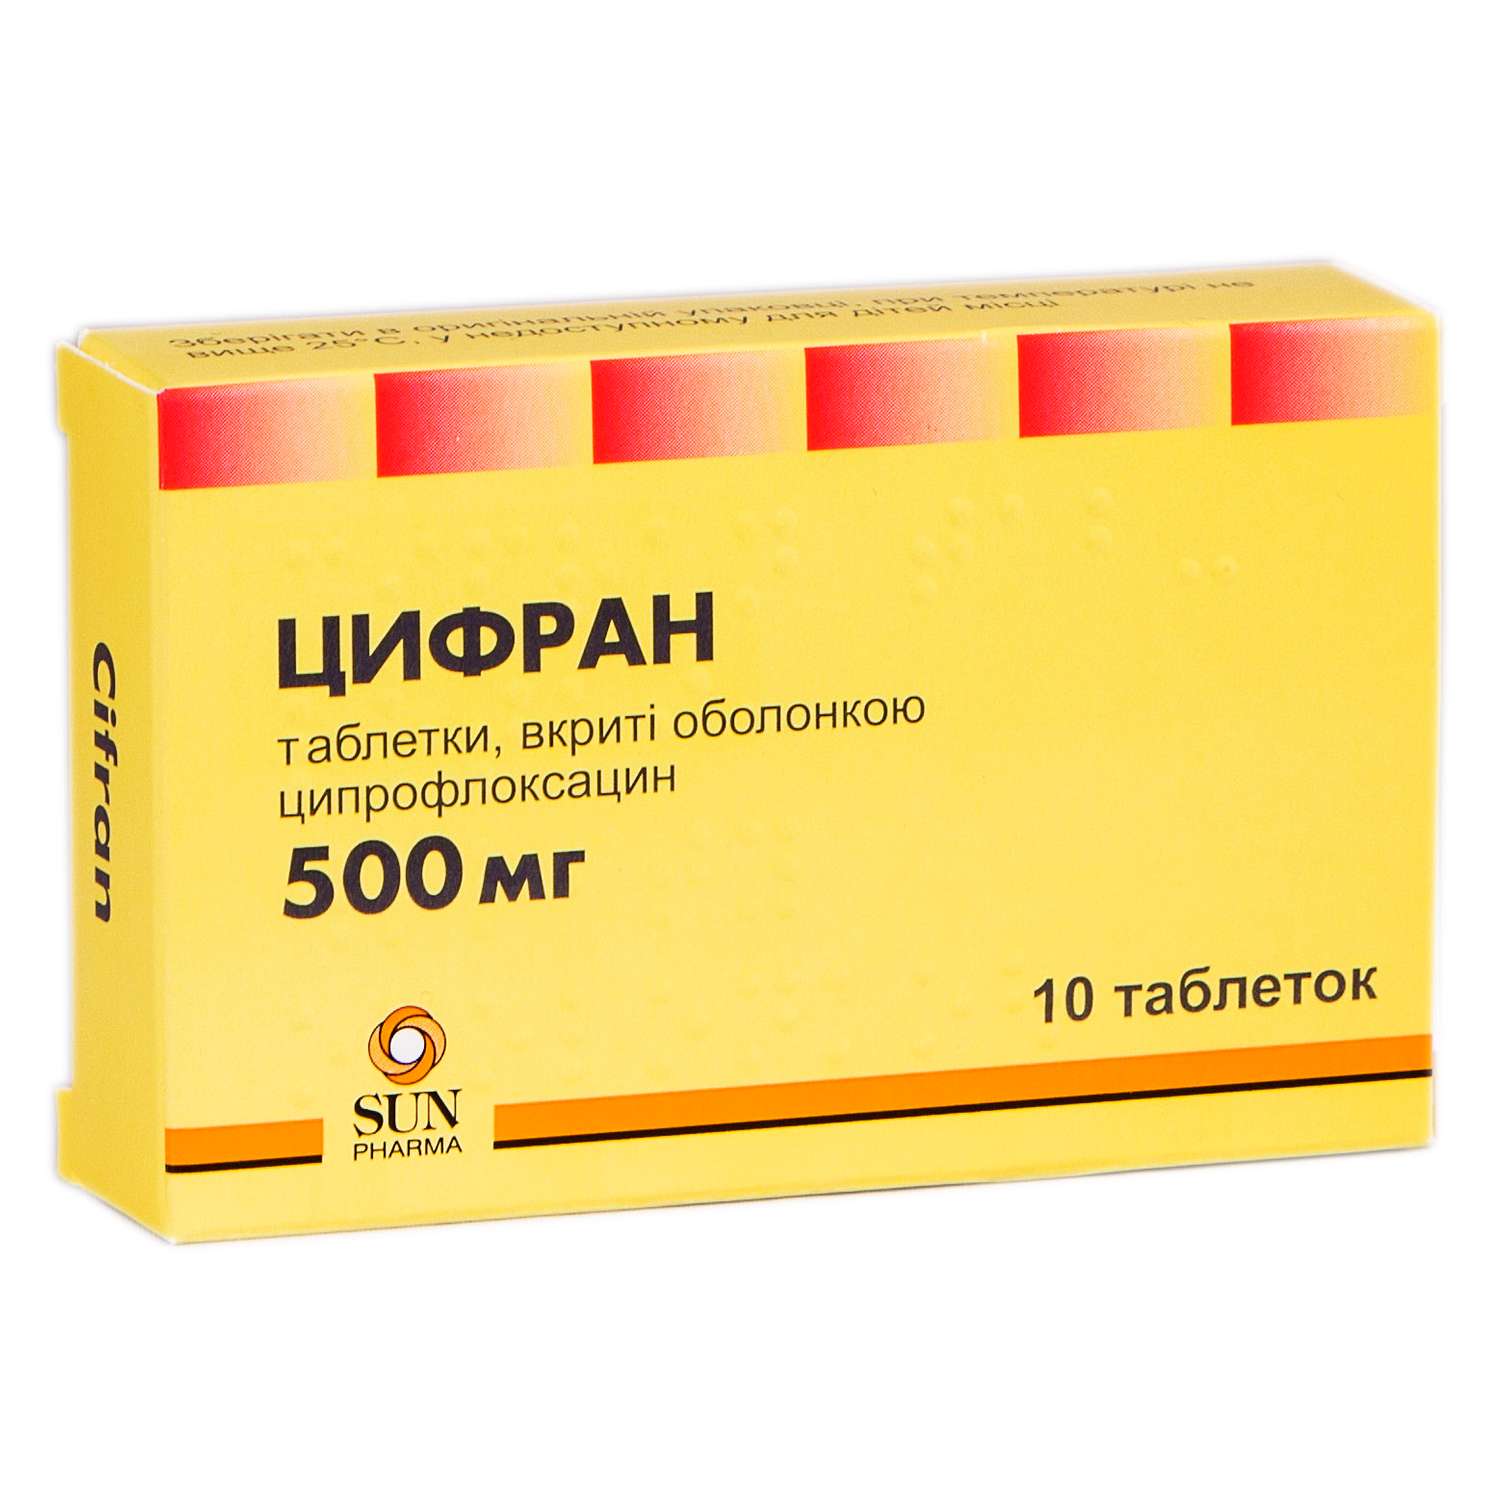 ЦИФРАН таблетки 500 мг: інструкція, аналоги, ціна в аптеках, показання .